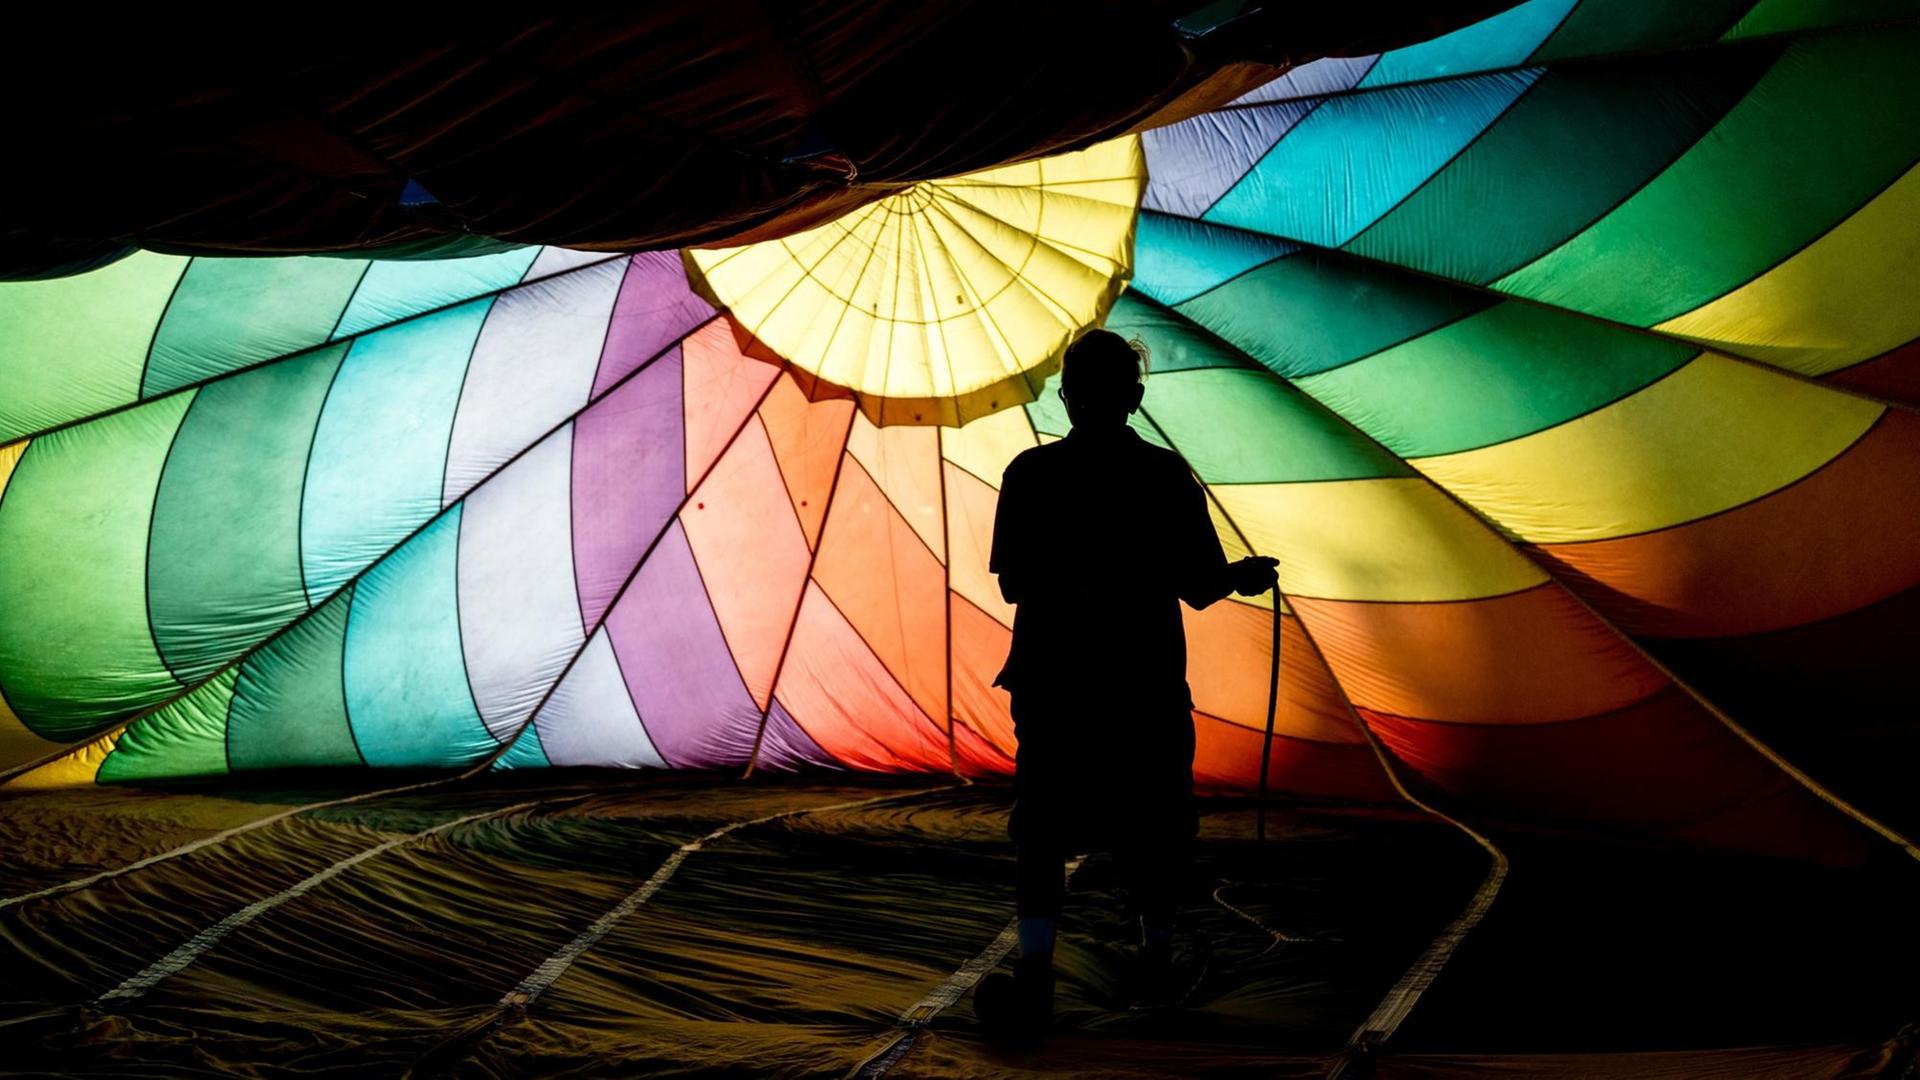 Ein Mann steht unter einem Heißluftballon in regenbogenfarben.